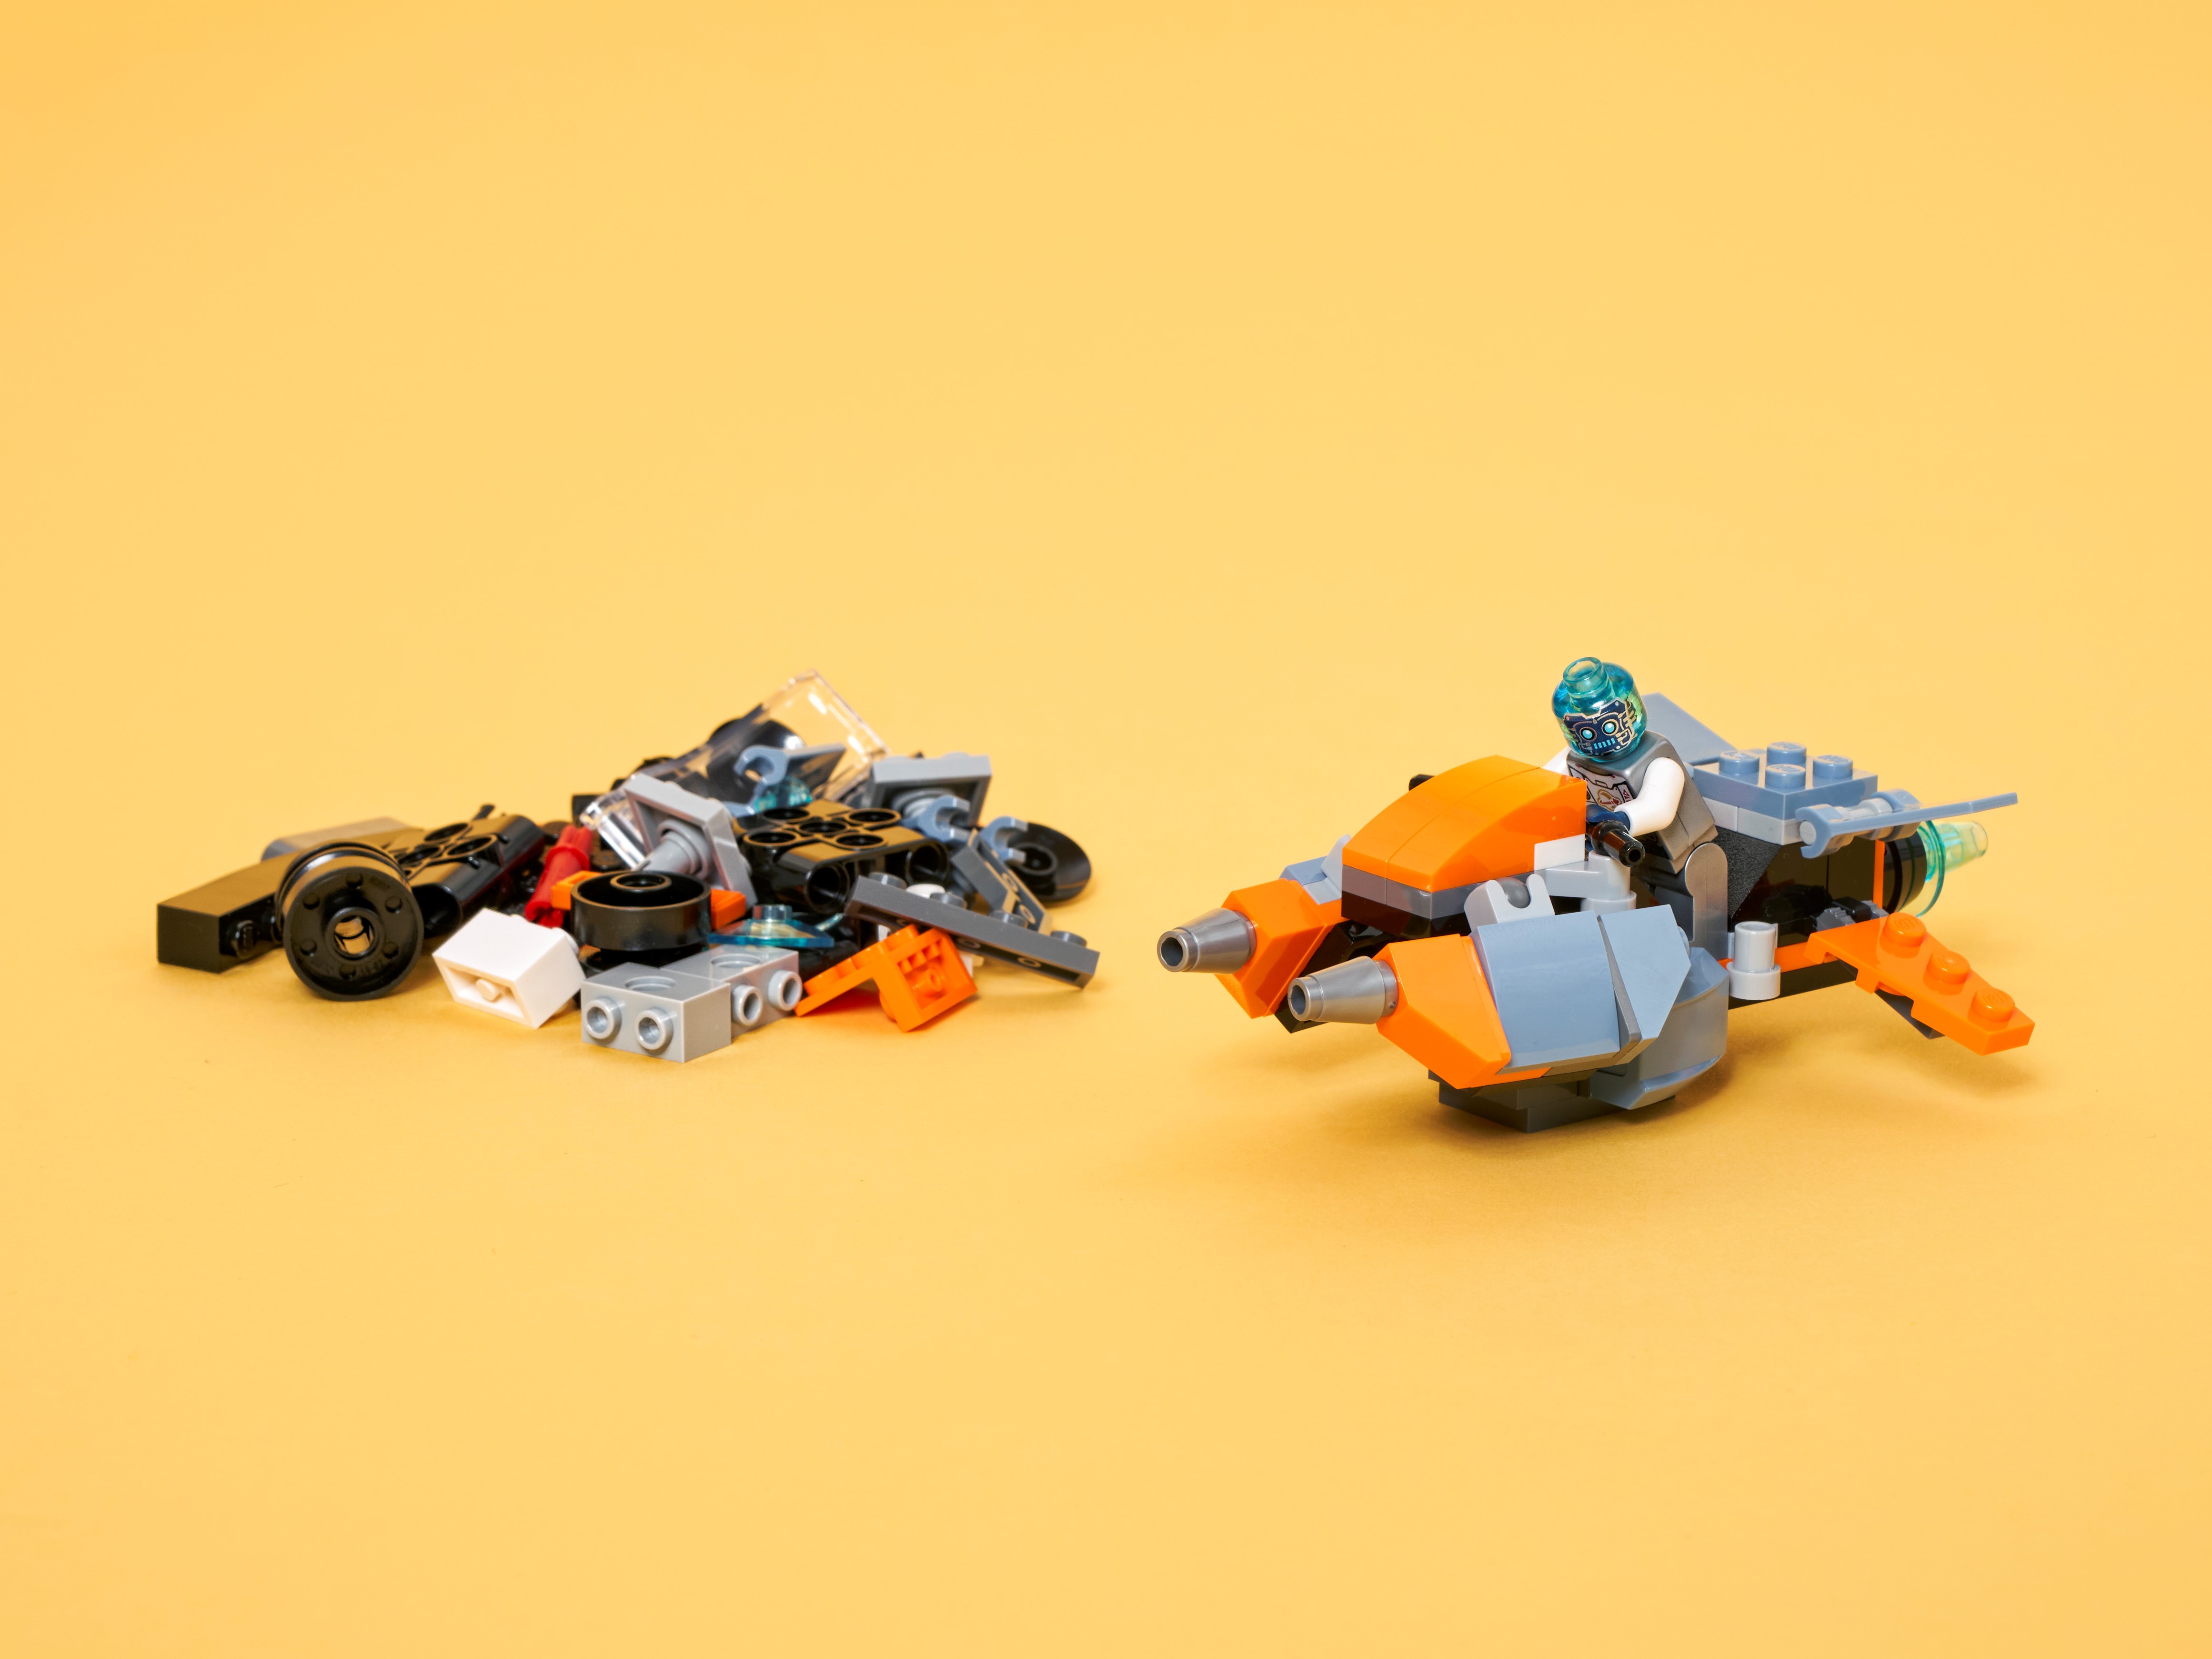  LEGO Creator 3 en 1 Cyber Drone Space Toys, se transforma de  dron a Cyber Mech o Cyber Scooter, juego de construcción de juguetes  espaciales, regalo para niños y niñas de